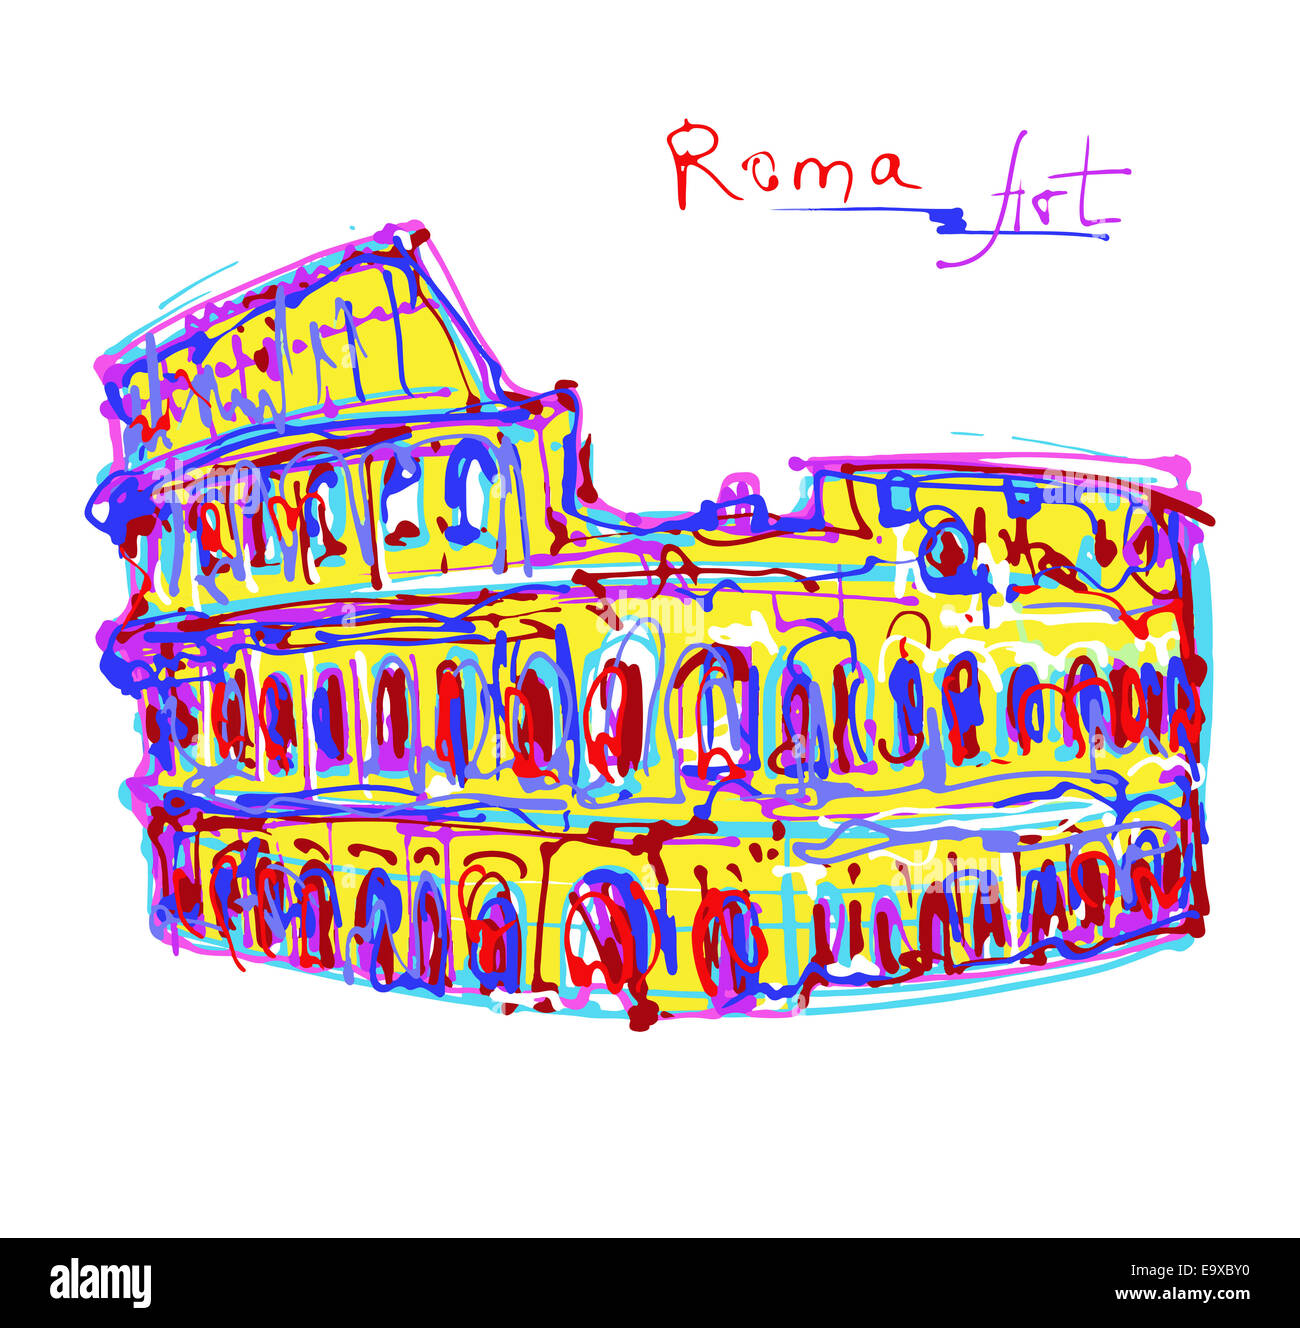 Célèbre place de Rome Italie, dessin original en couleurs arc-en-ciel Banque D'Images